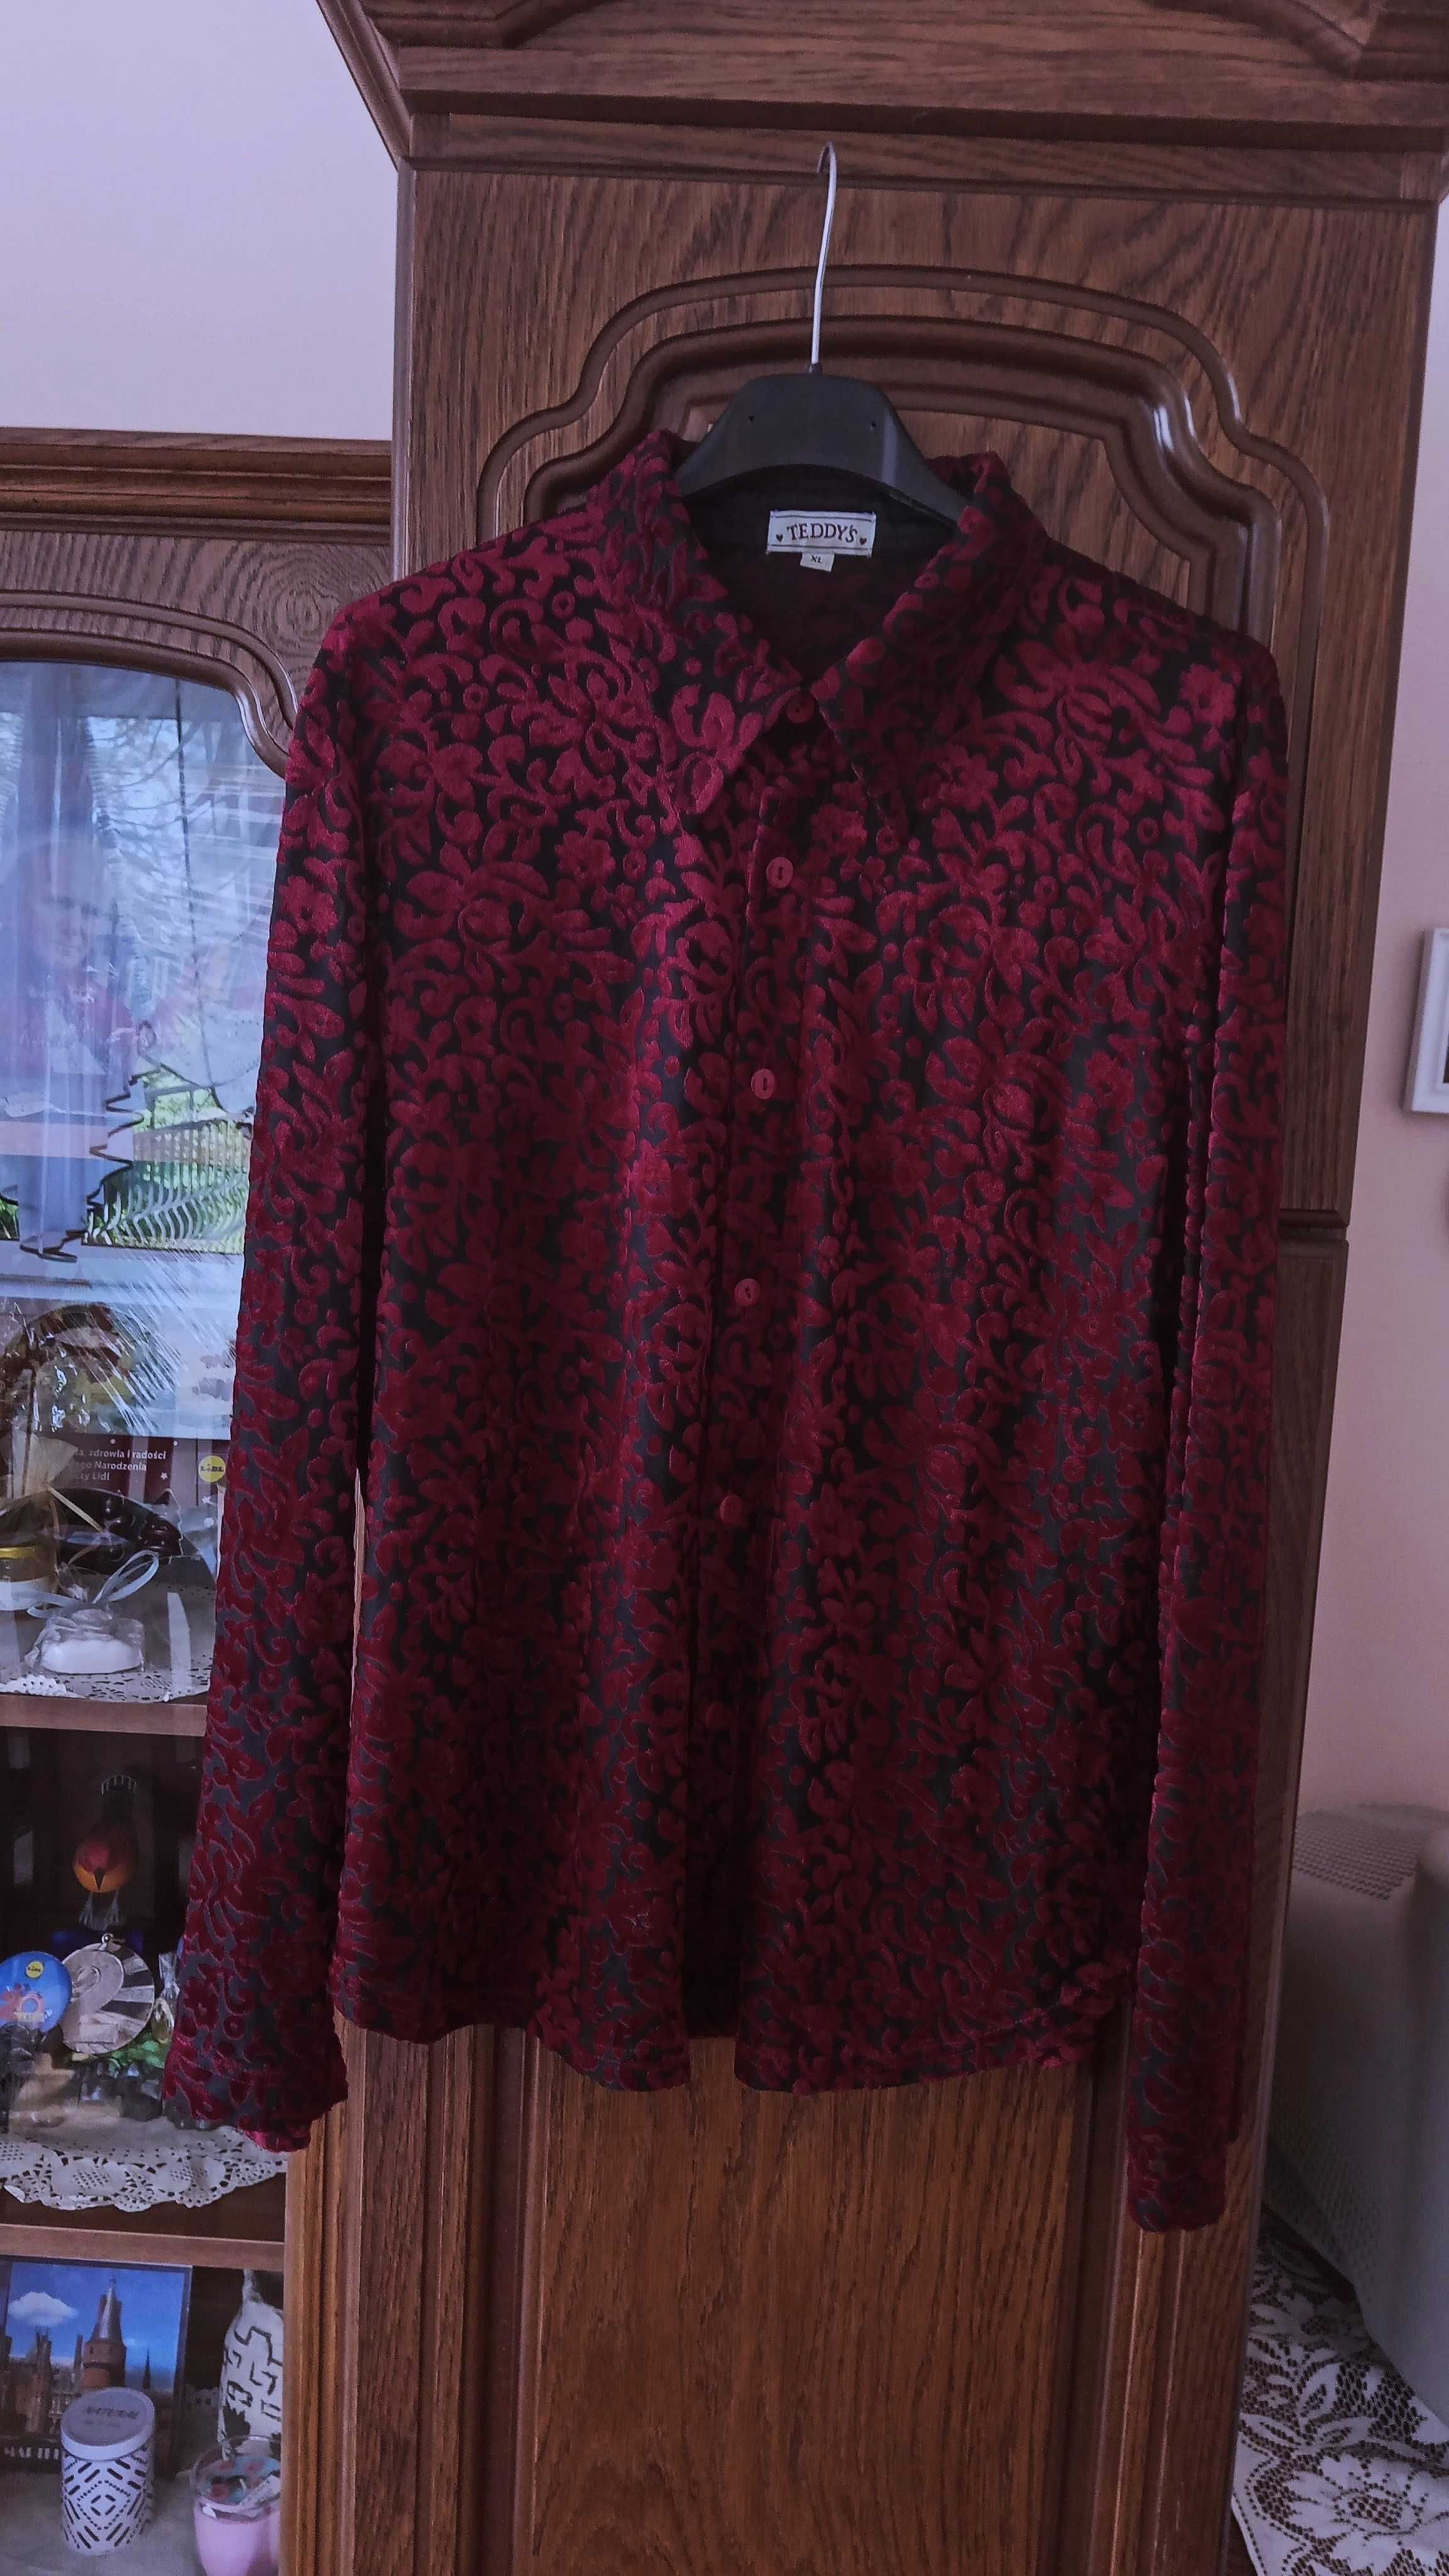 bluzka ze wzorkami w kolorze czerwonym/burgundowym Teddy's rozmiar XL